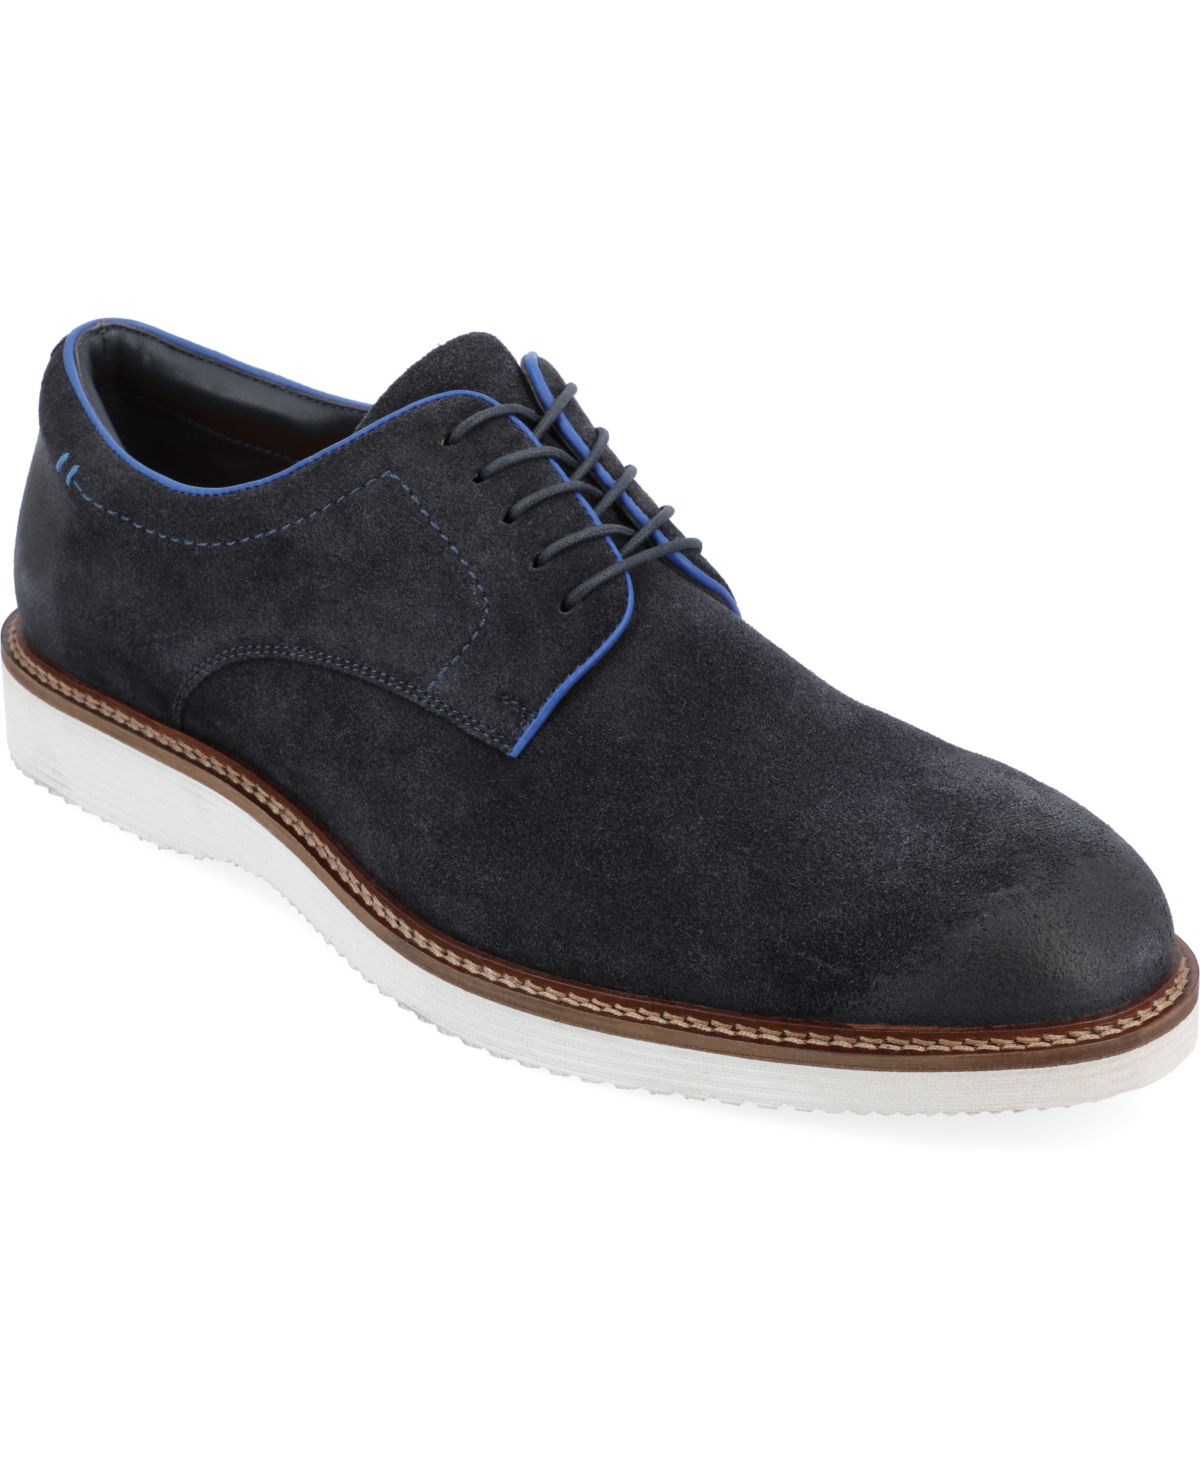 Men's Seneca Plain Toe Derby Casual Shoes - Taupe